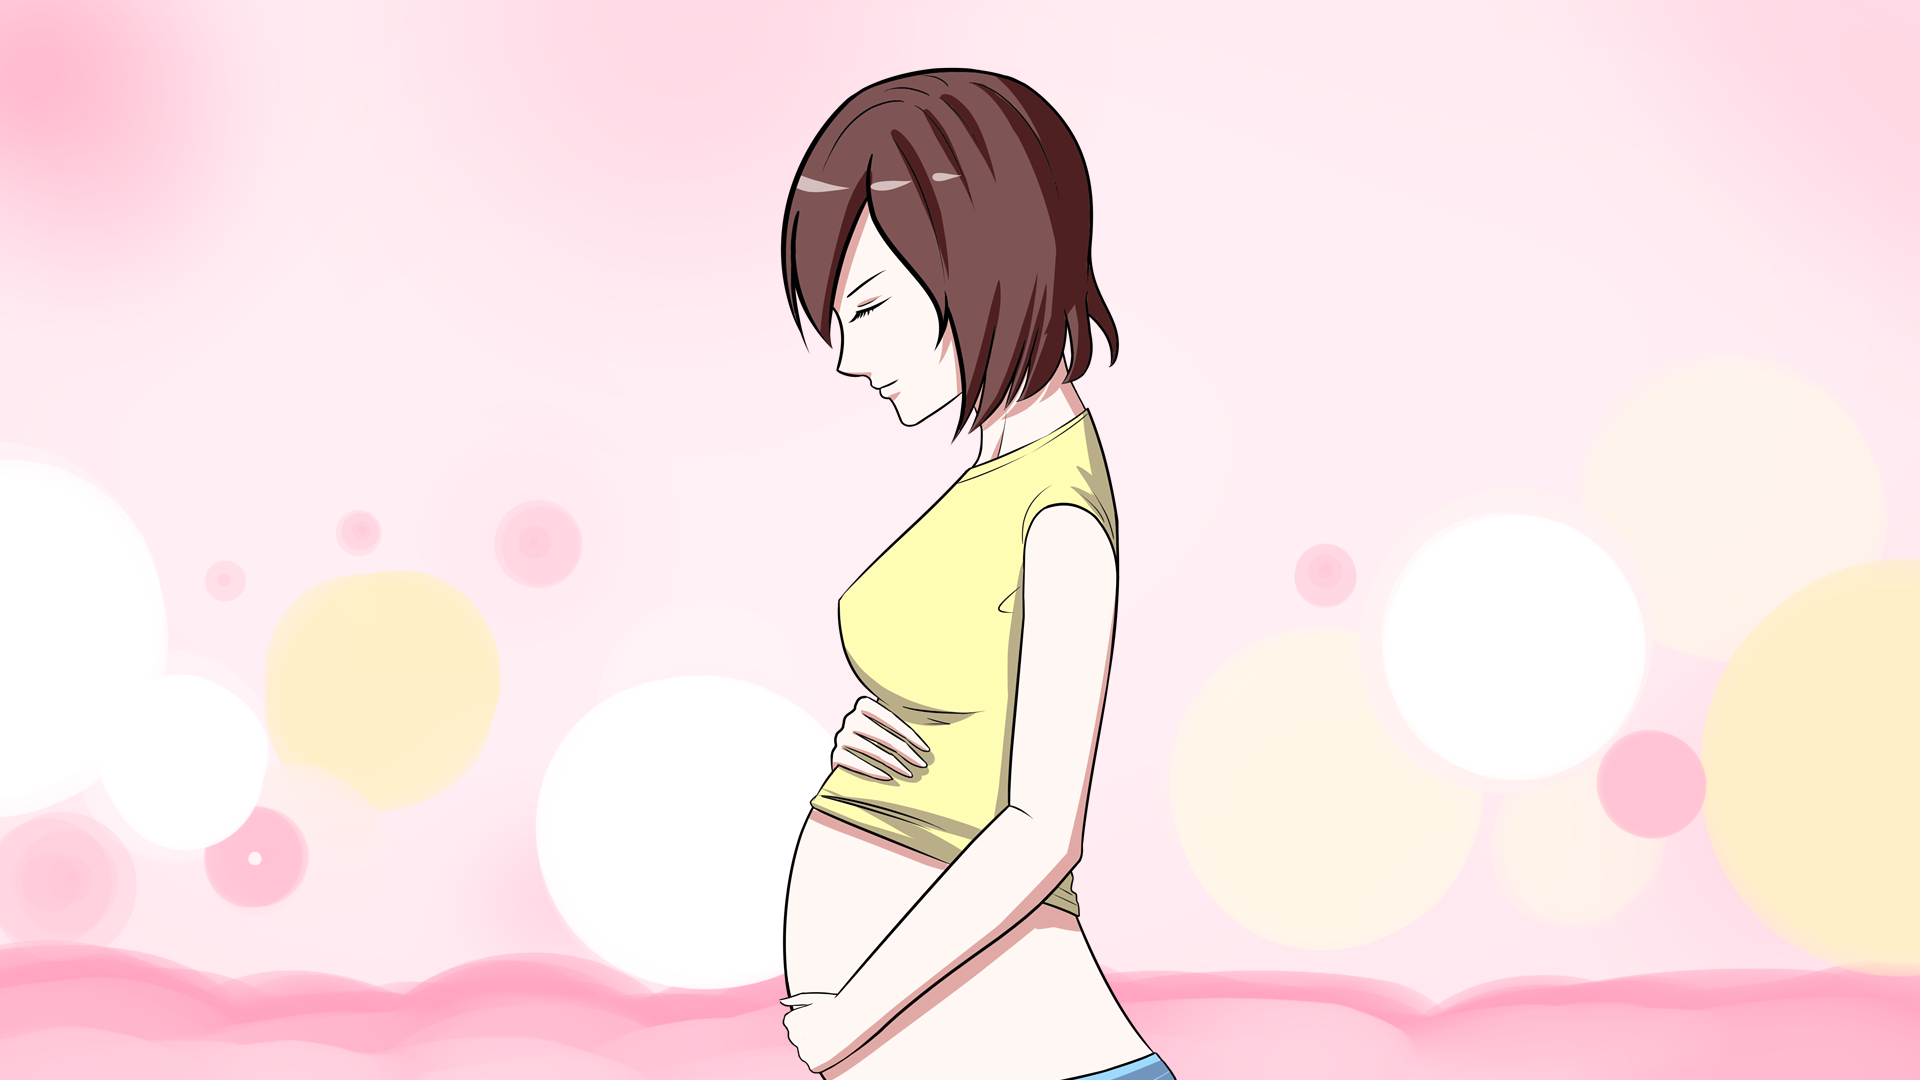 漫画大肚子孕妇的照片图片